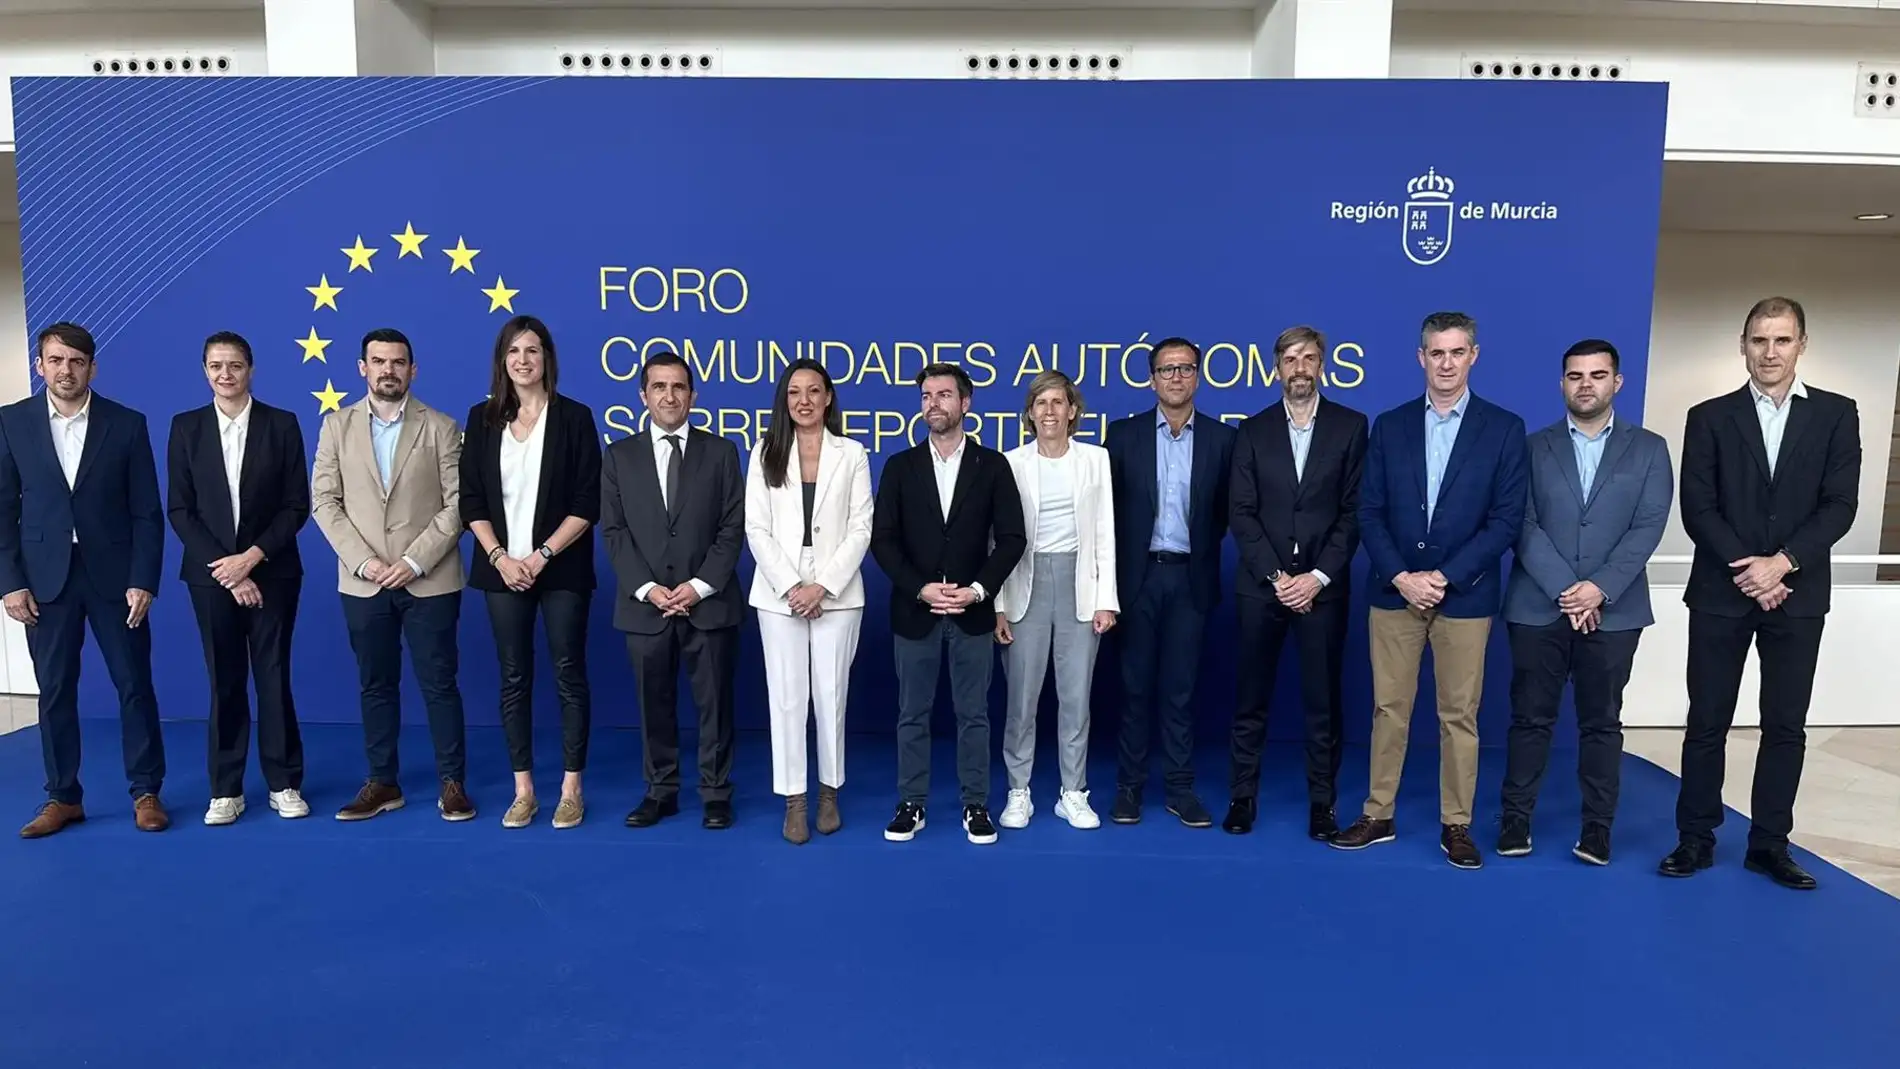 Extremadura aboga por la apertura de centros escolares por la tarde para facilitar espacios para la práctica deportiva